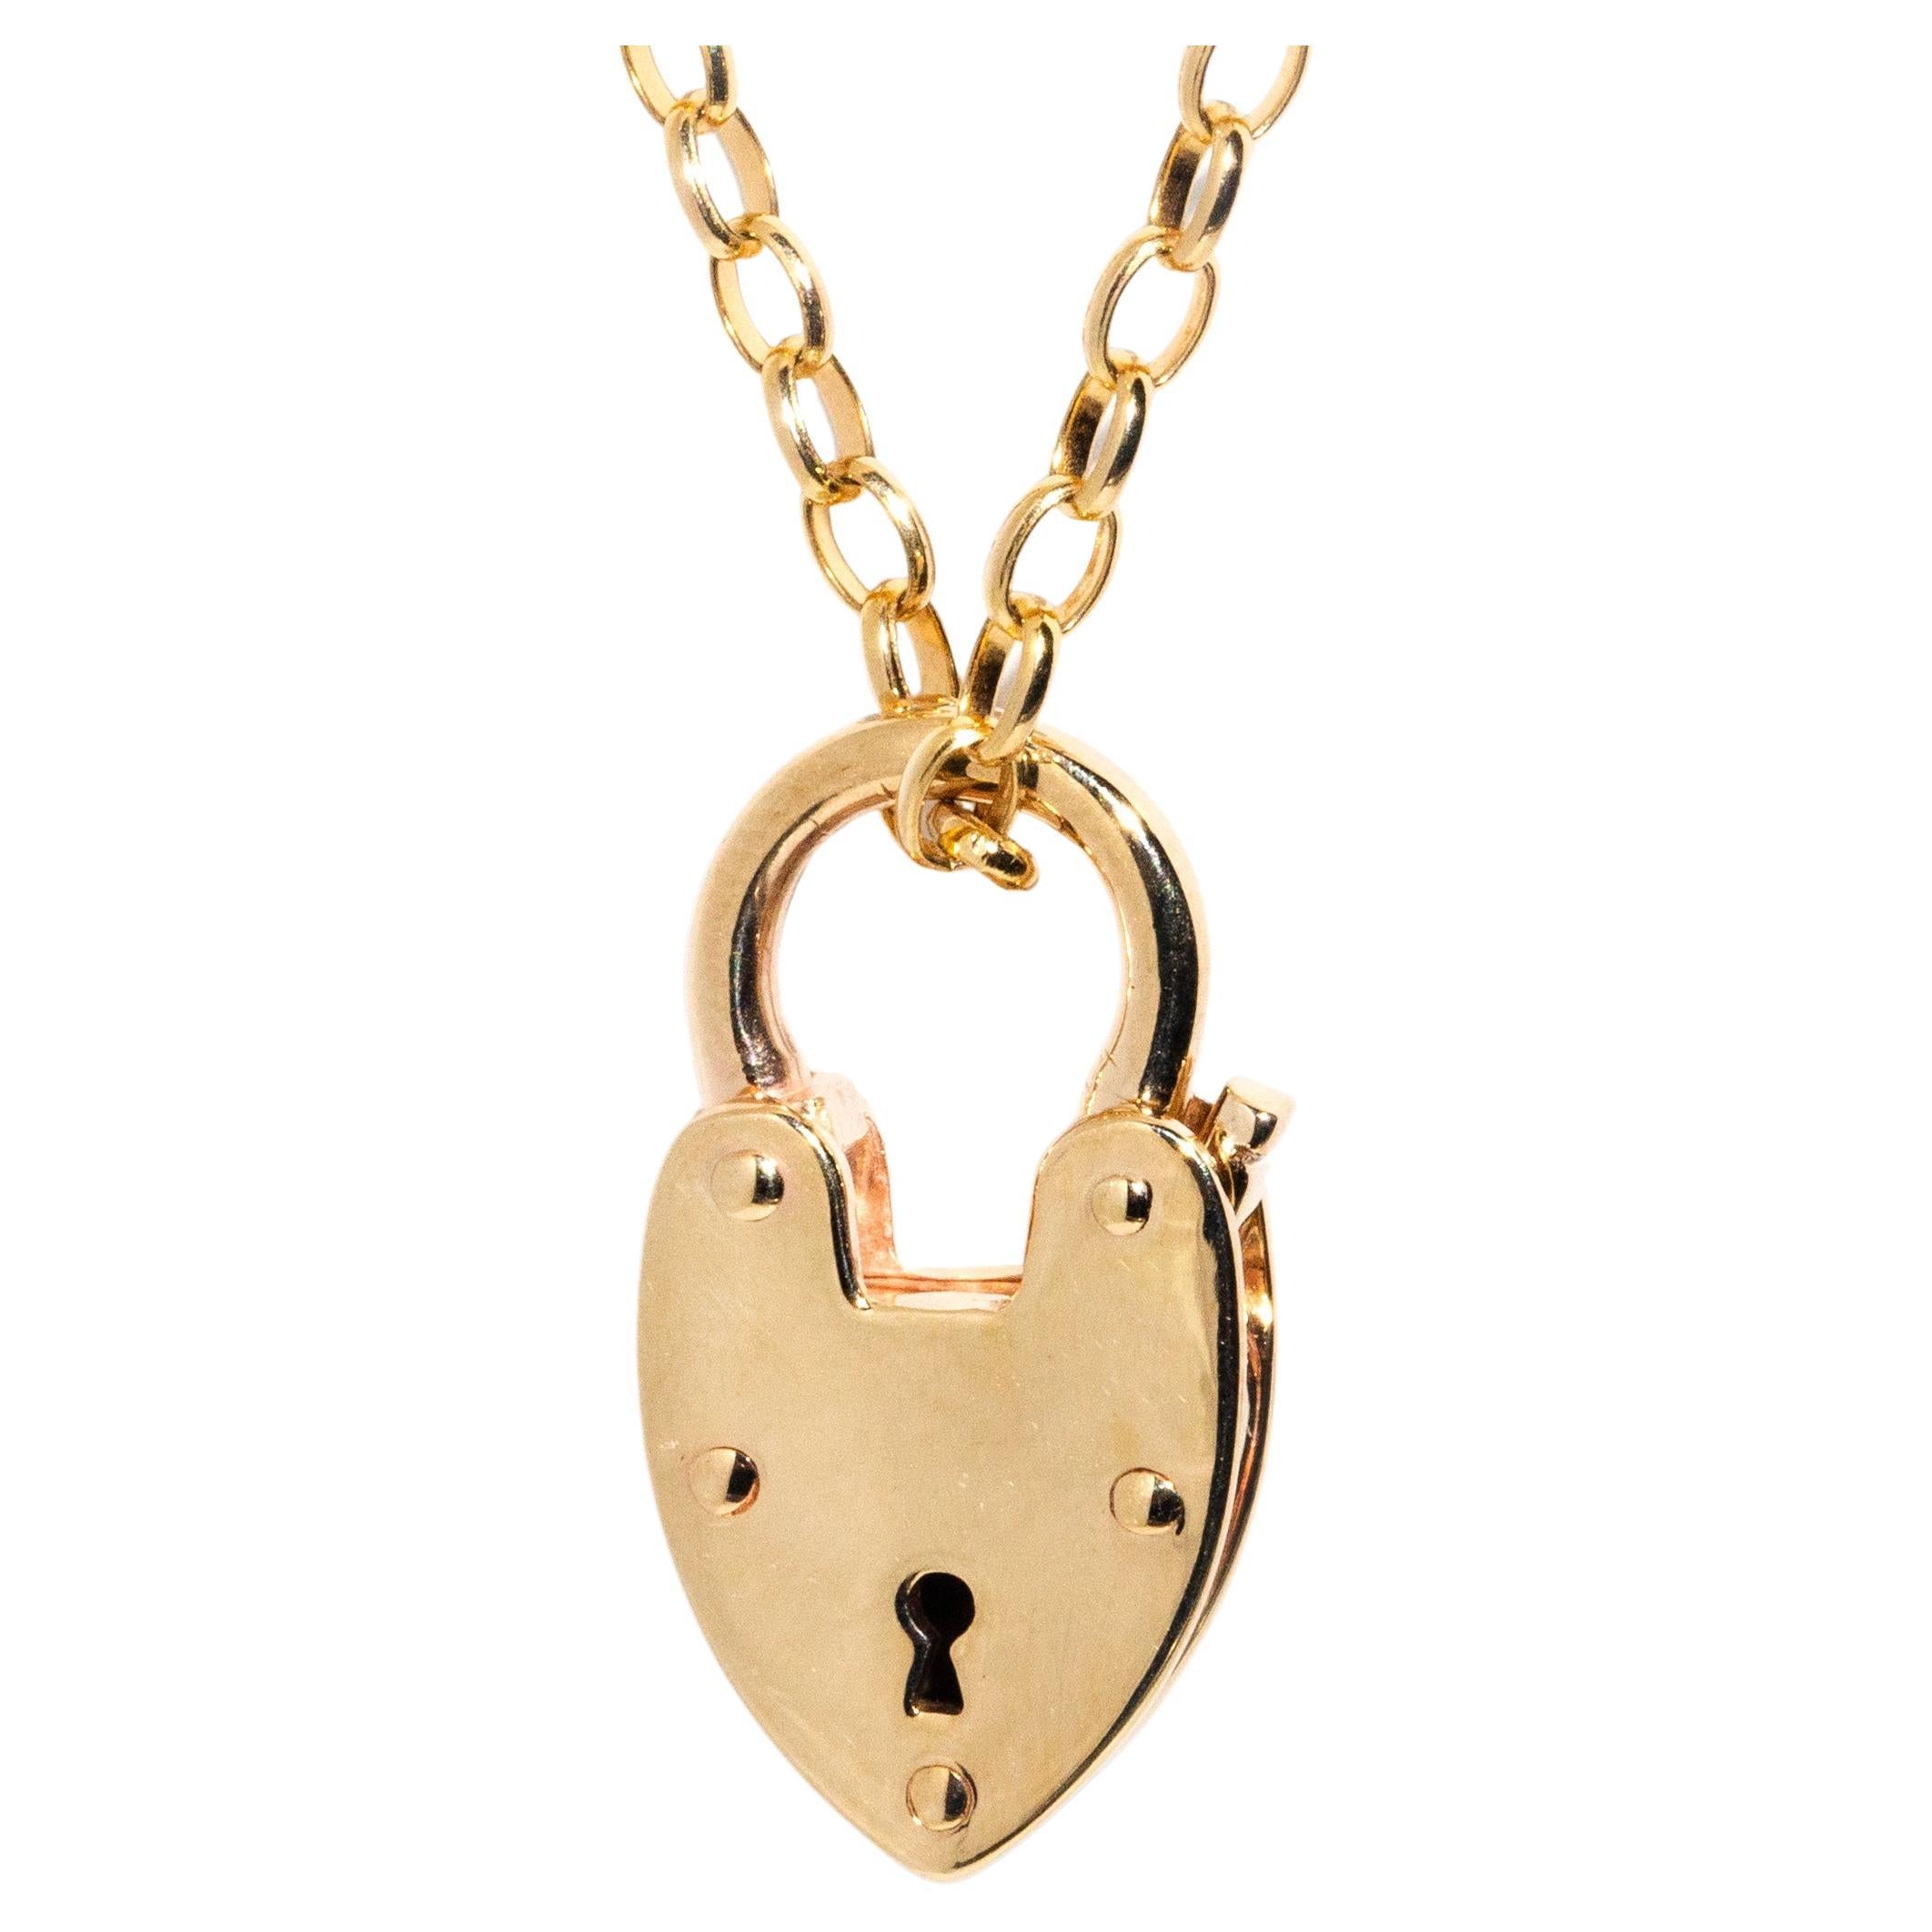 Vintage Circa 1950s Heart Locket with Belcher Chain 9 Carat Gold